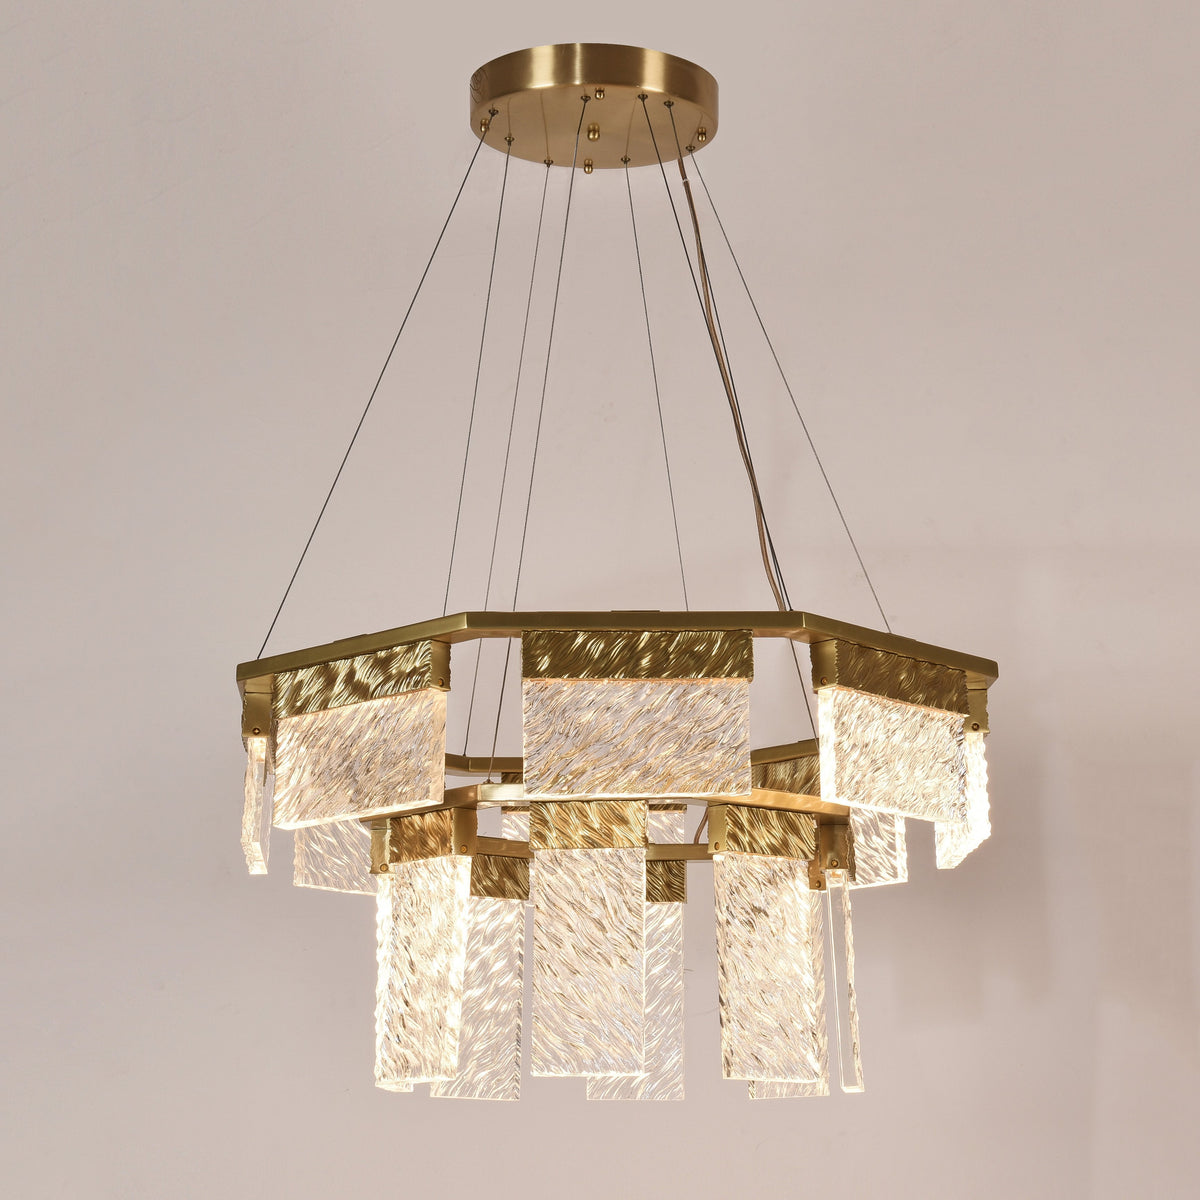 Joseph 2-Tier Round LED Chandelier, Modern Glass Lamp for Living Room, Bedroom, Dining Room